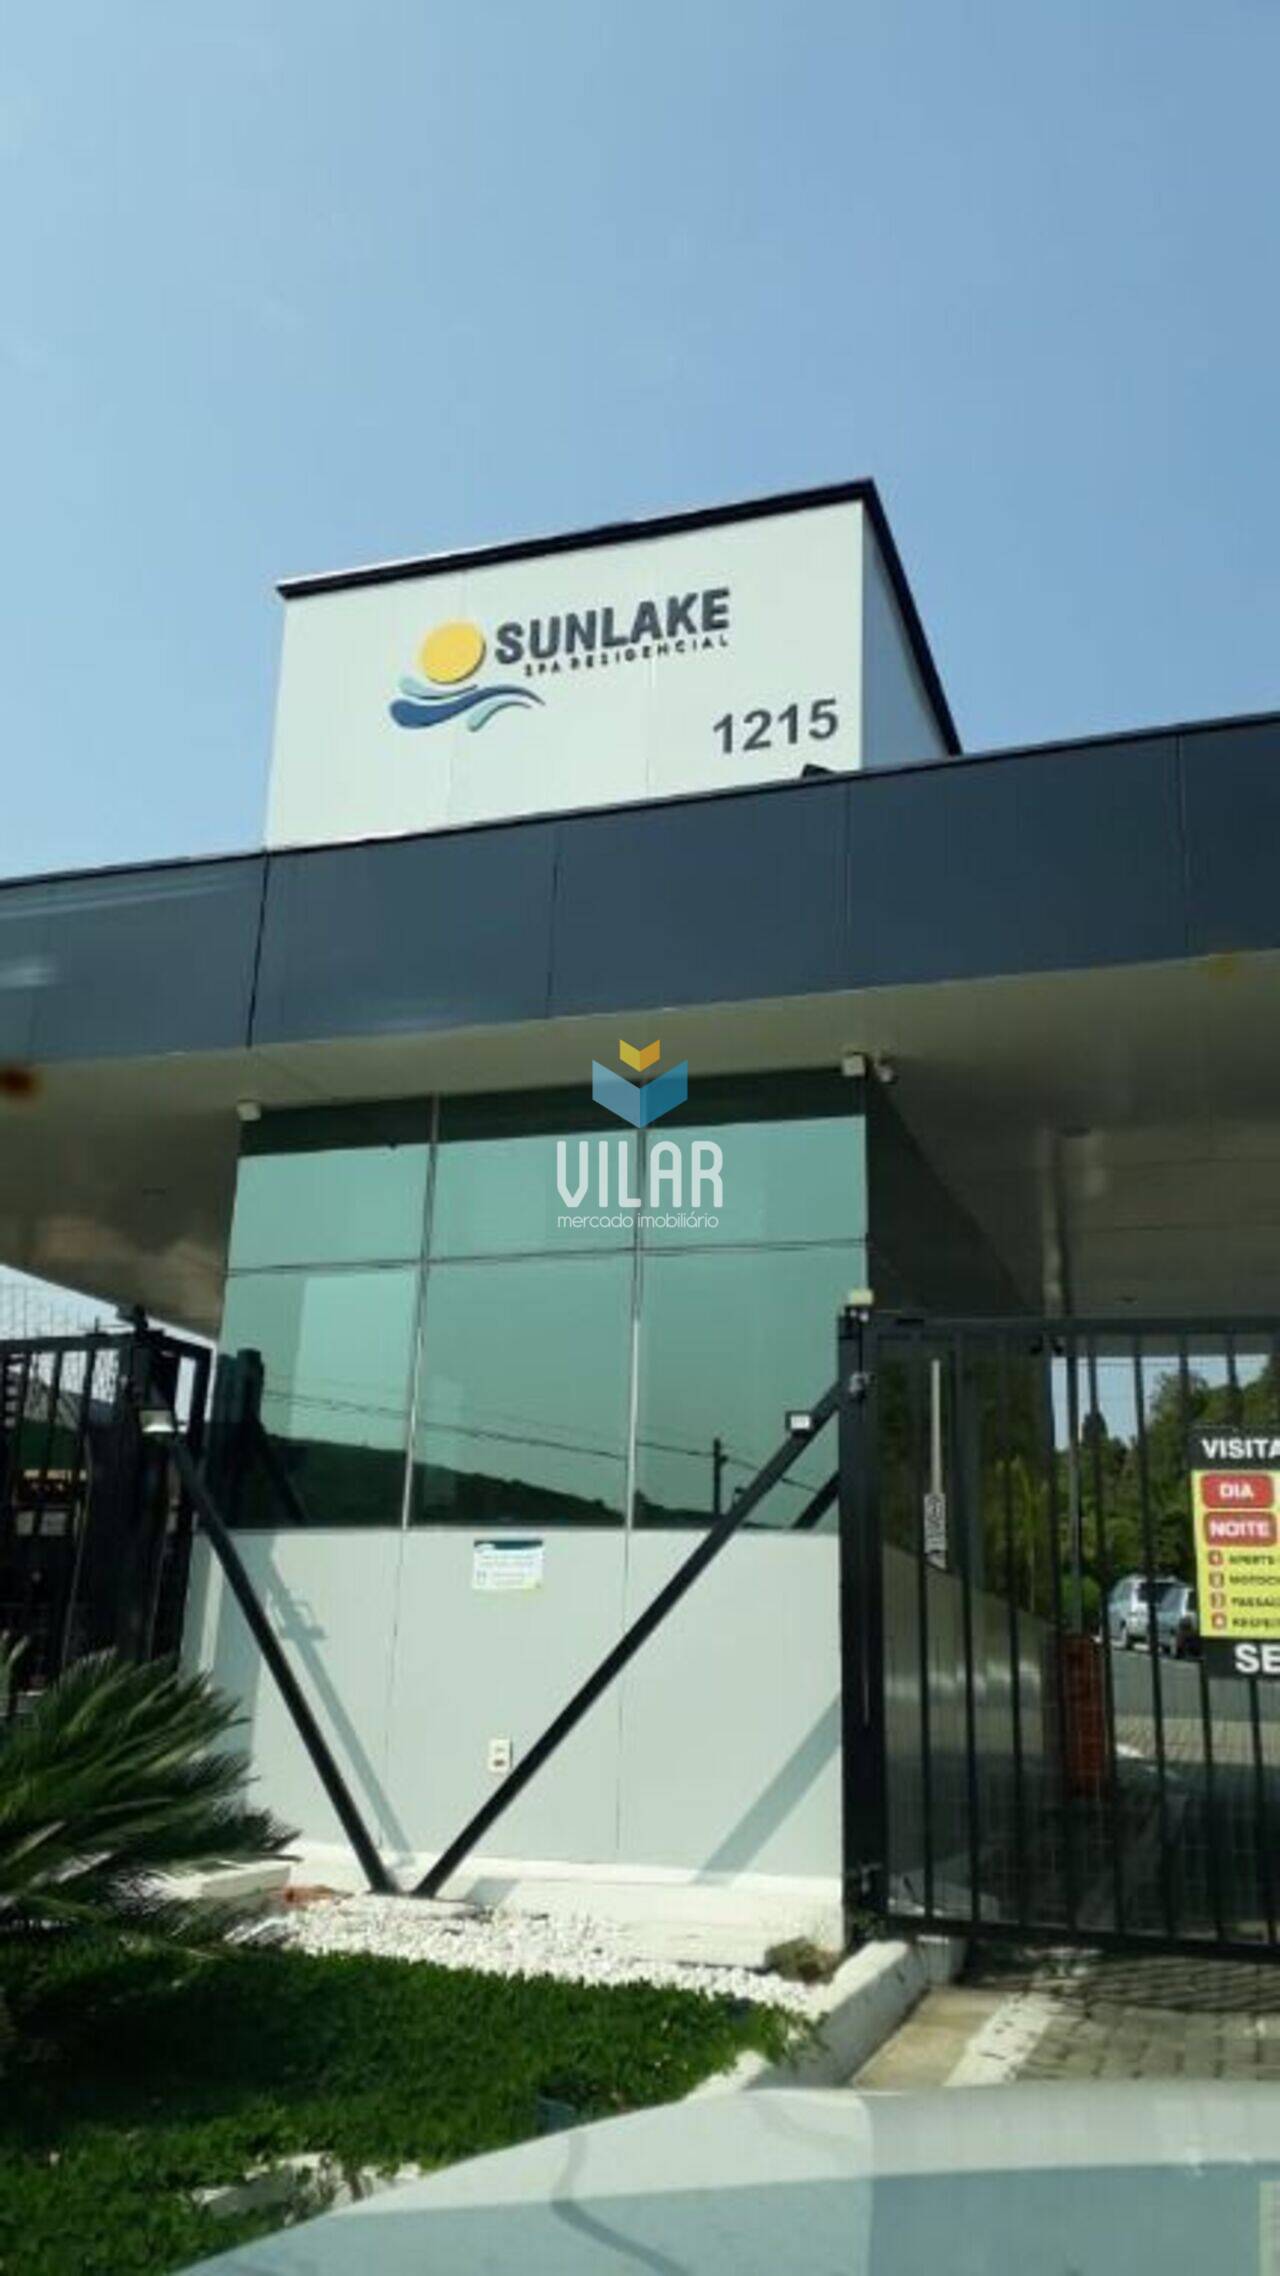 Casa Condomínio Sunlake, Sorocaba - SP